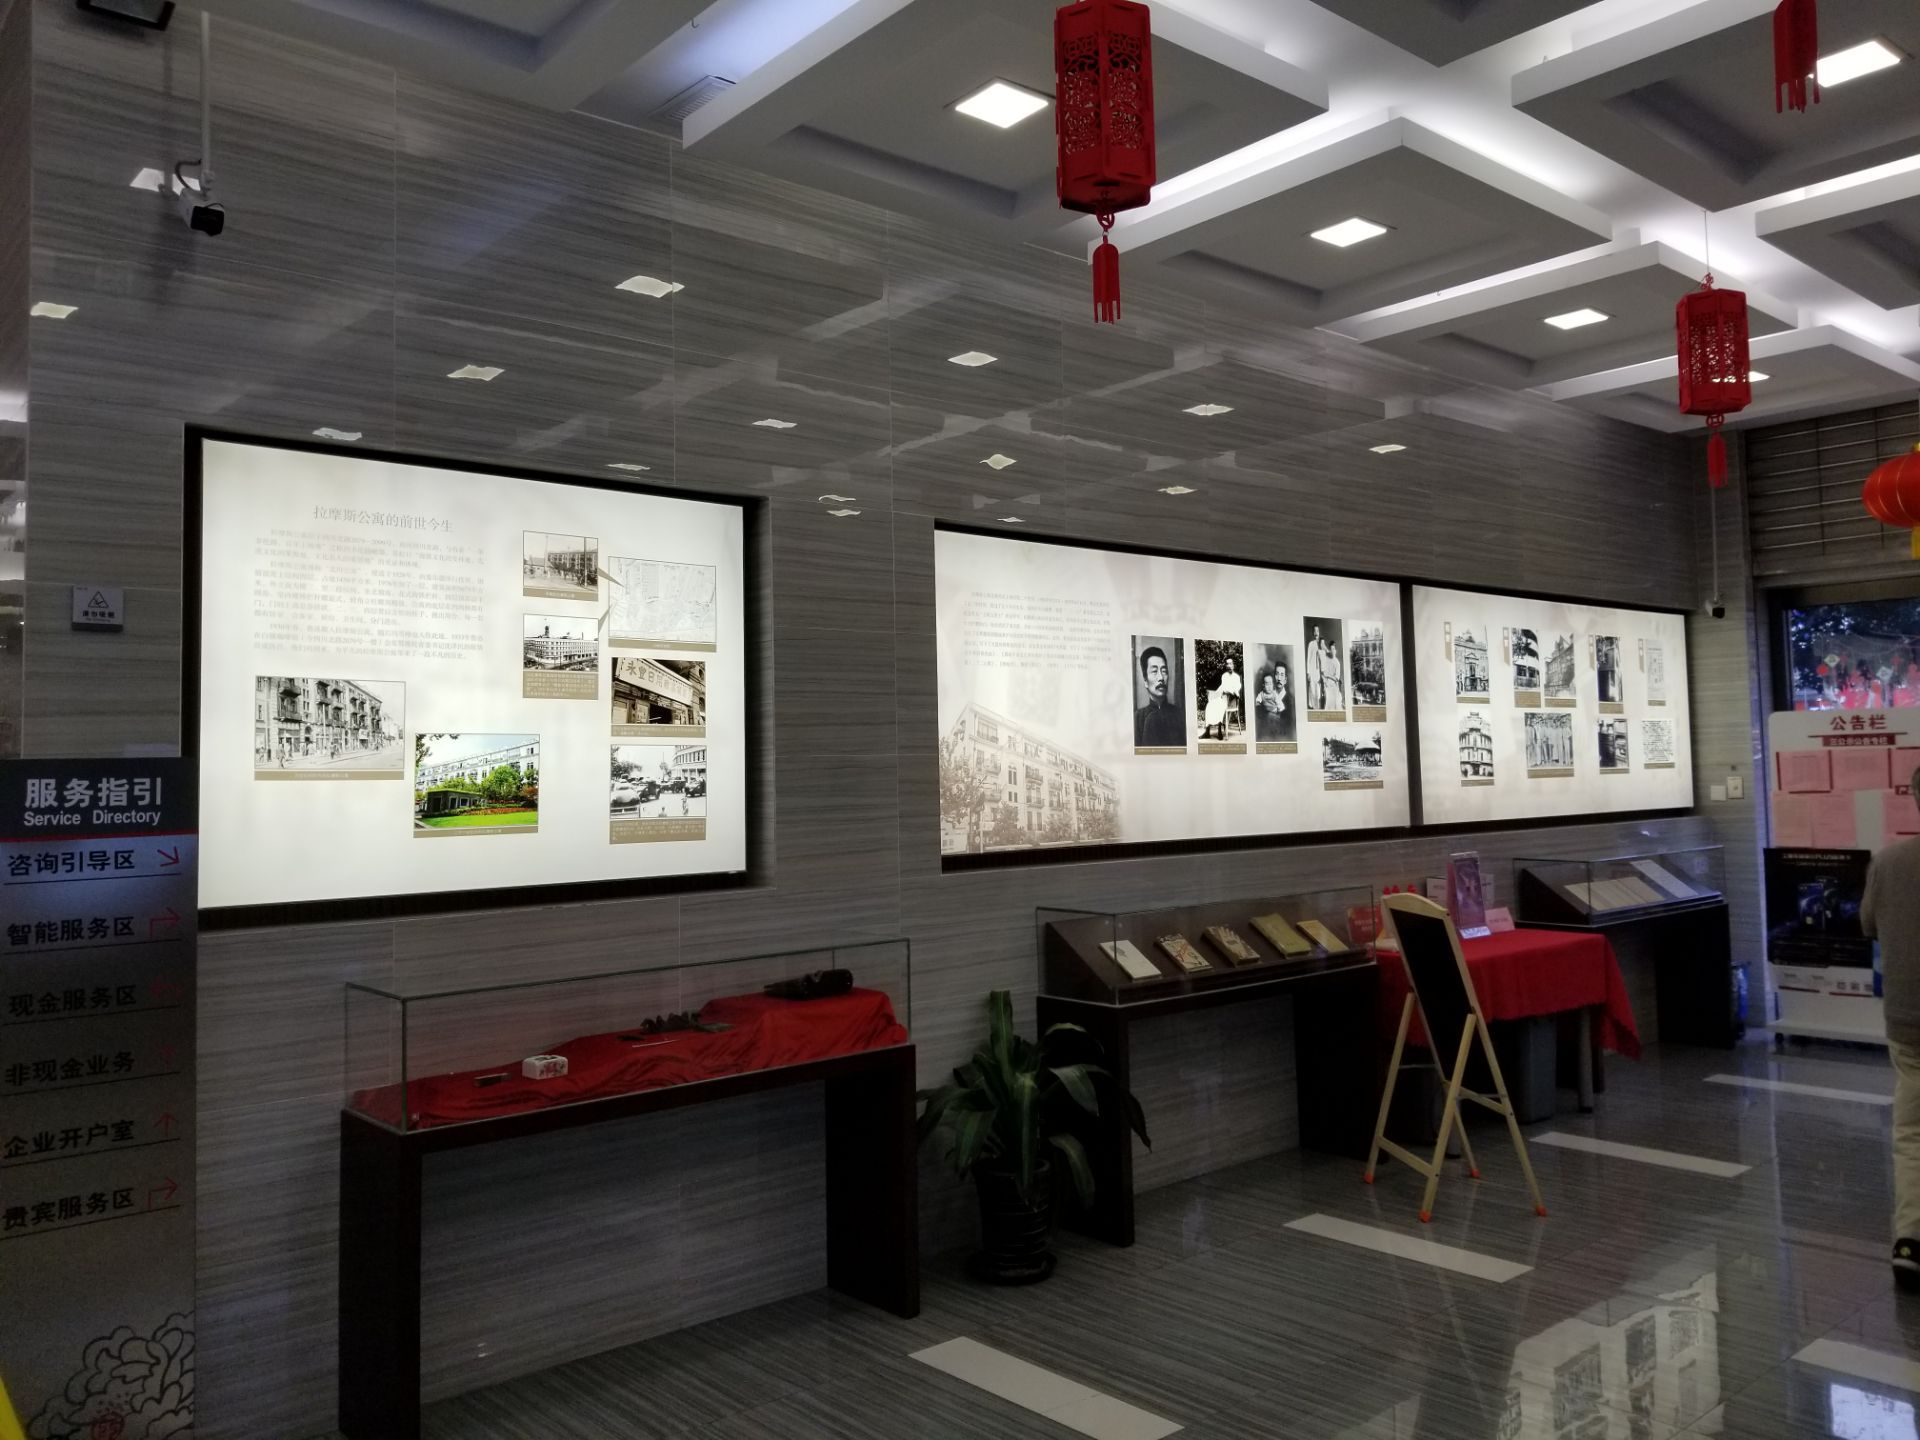 【携程攻略】上海拉摩斯公寓景点,上海拉摩斯公寓位于四川北路和海伦